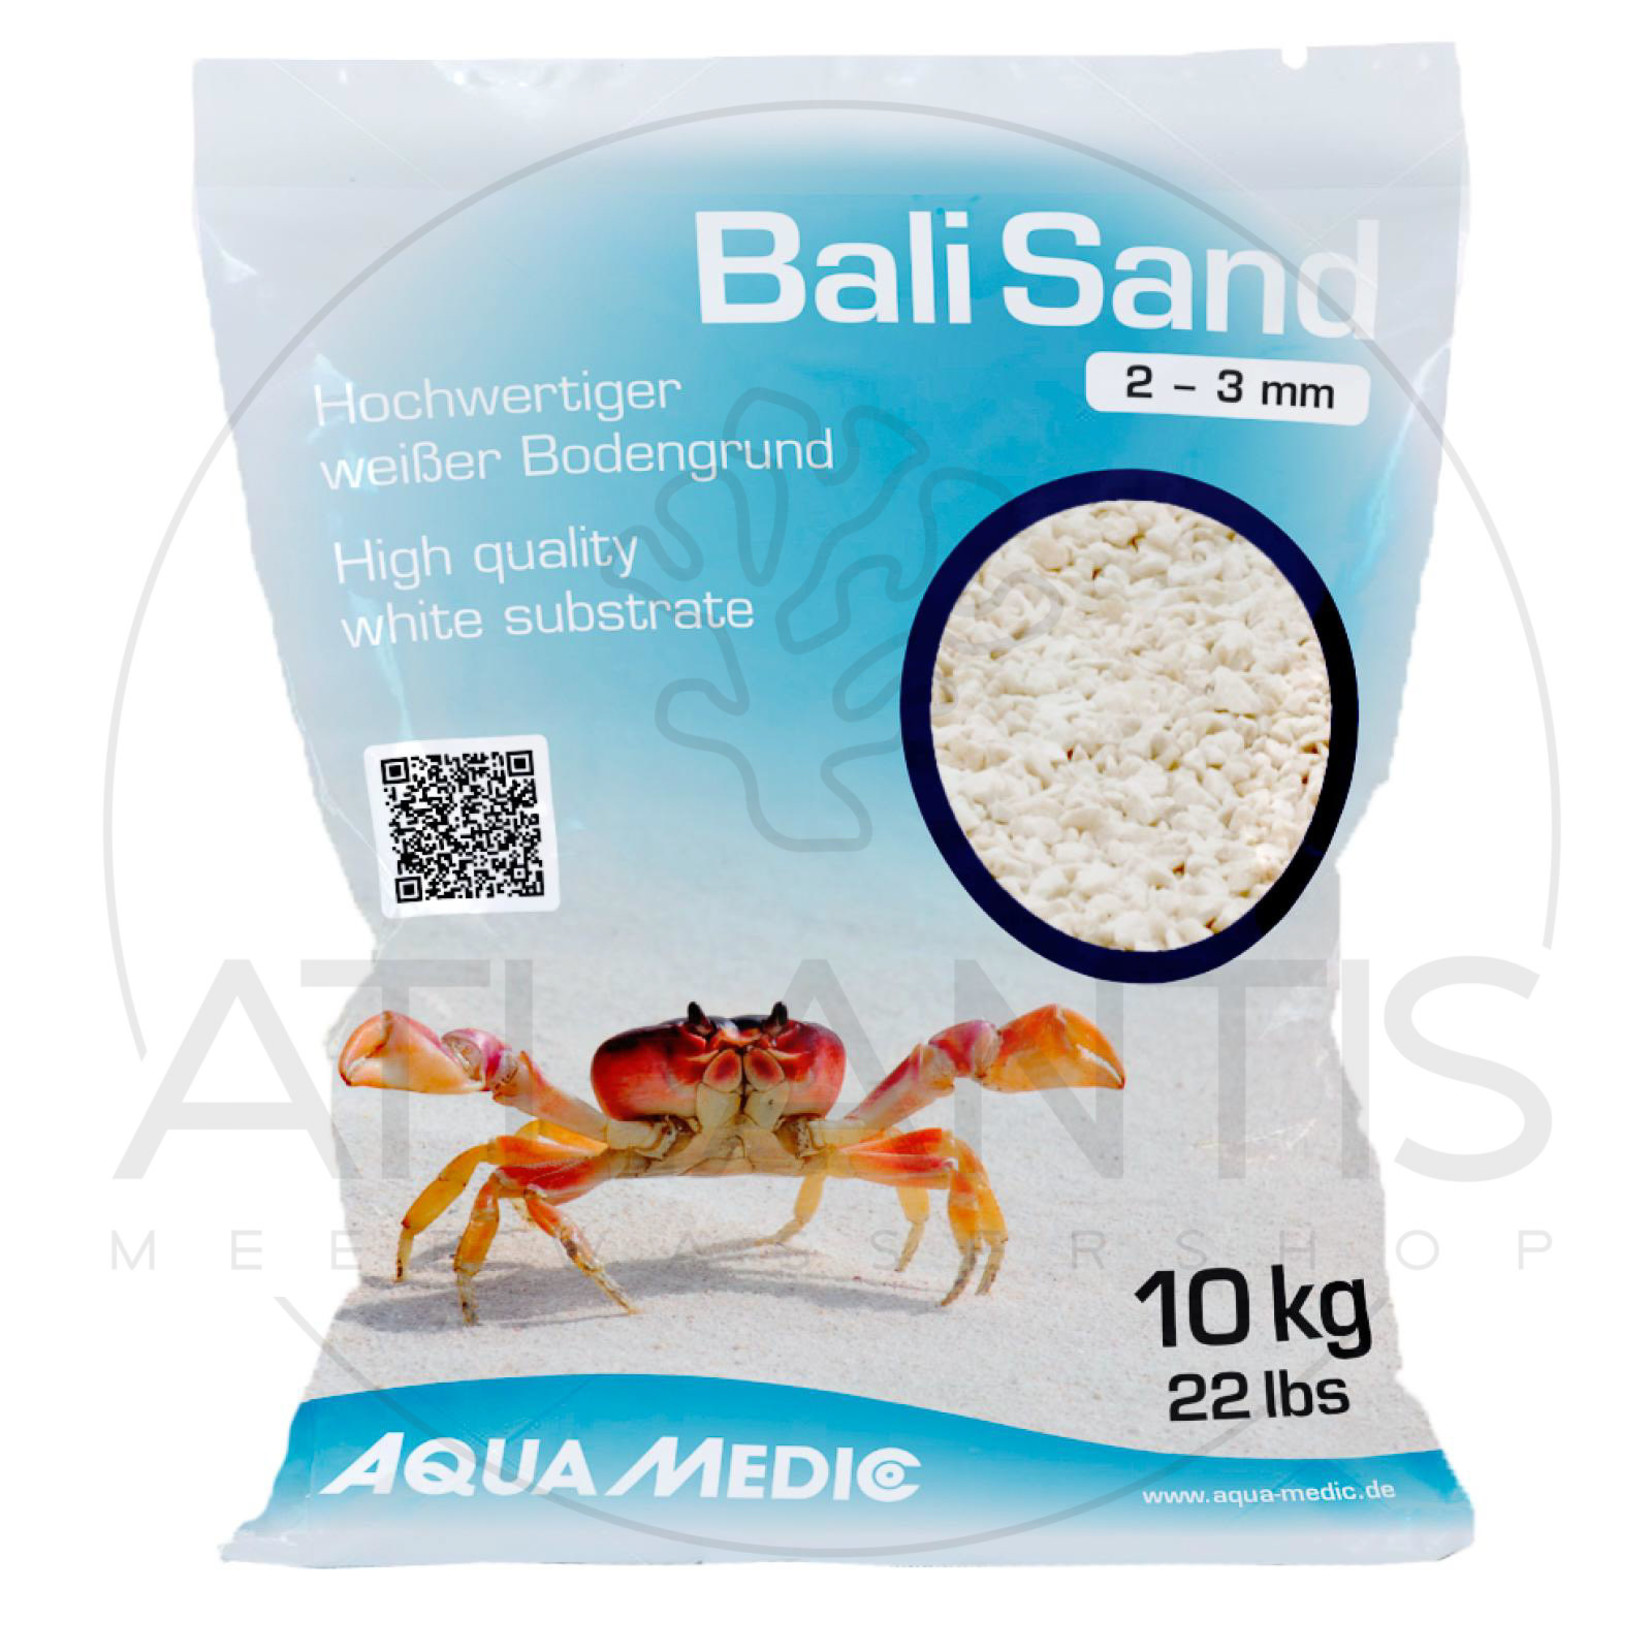 Aqua Medic Bali Sand 2 – 3 mm - 10 kg bag